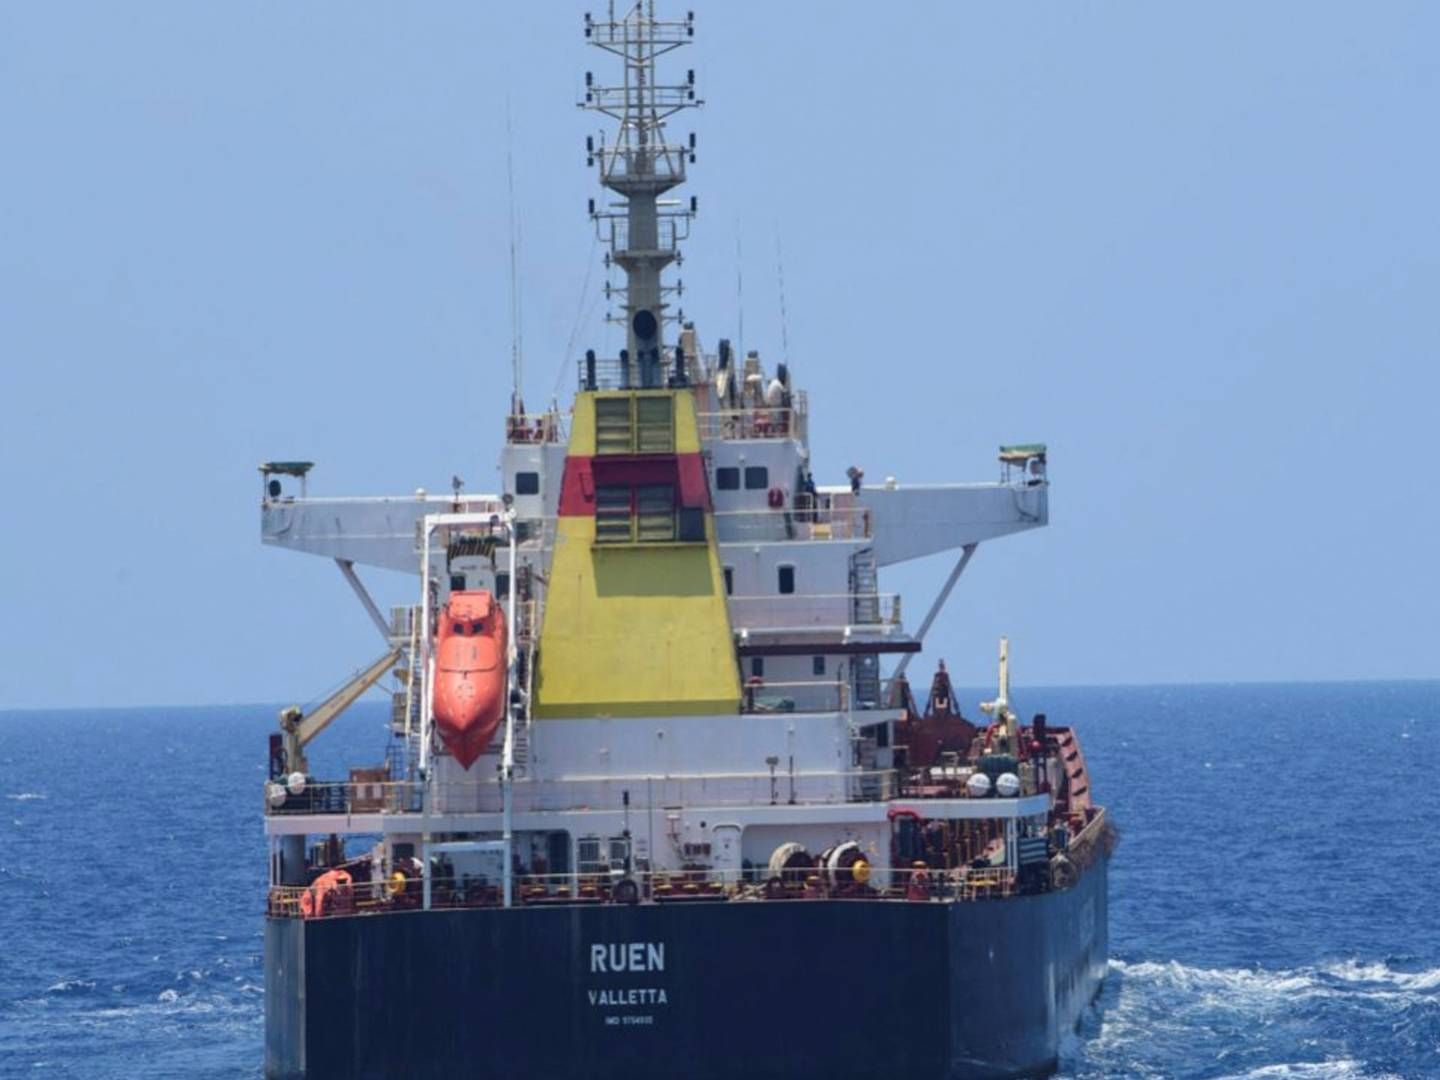 Skibet Ruen, der sejler under maltesisk flag, blev det første skib siden 2017, som somaliske pirater succesfuldt fik kapret i december. | Foto: Spokespersonnavy Via X/Reuters/Ritzau Scanpix